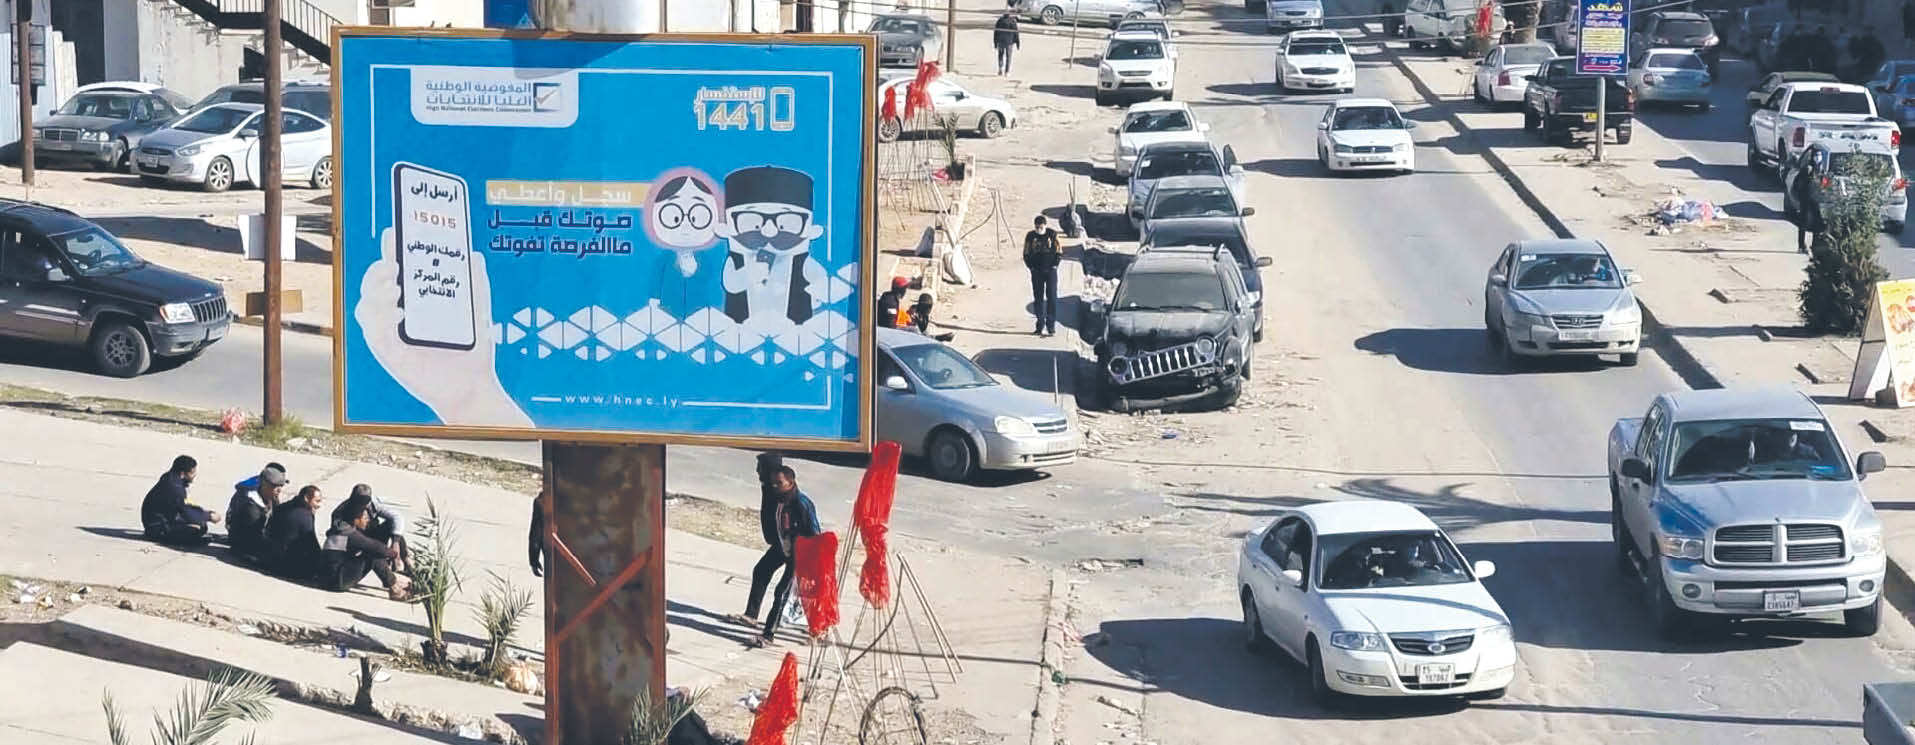 Reklama w Trypolisie zachęcająca do rejestracji w spisie wyborców